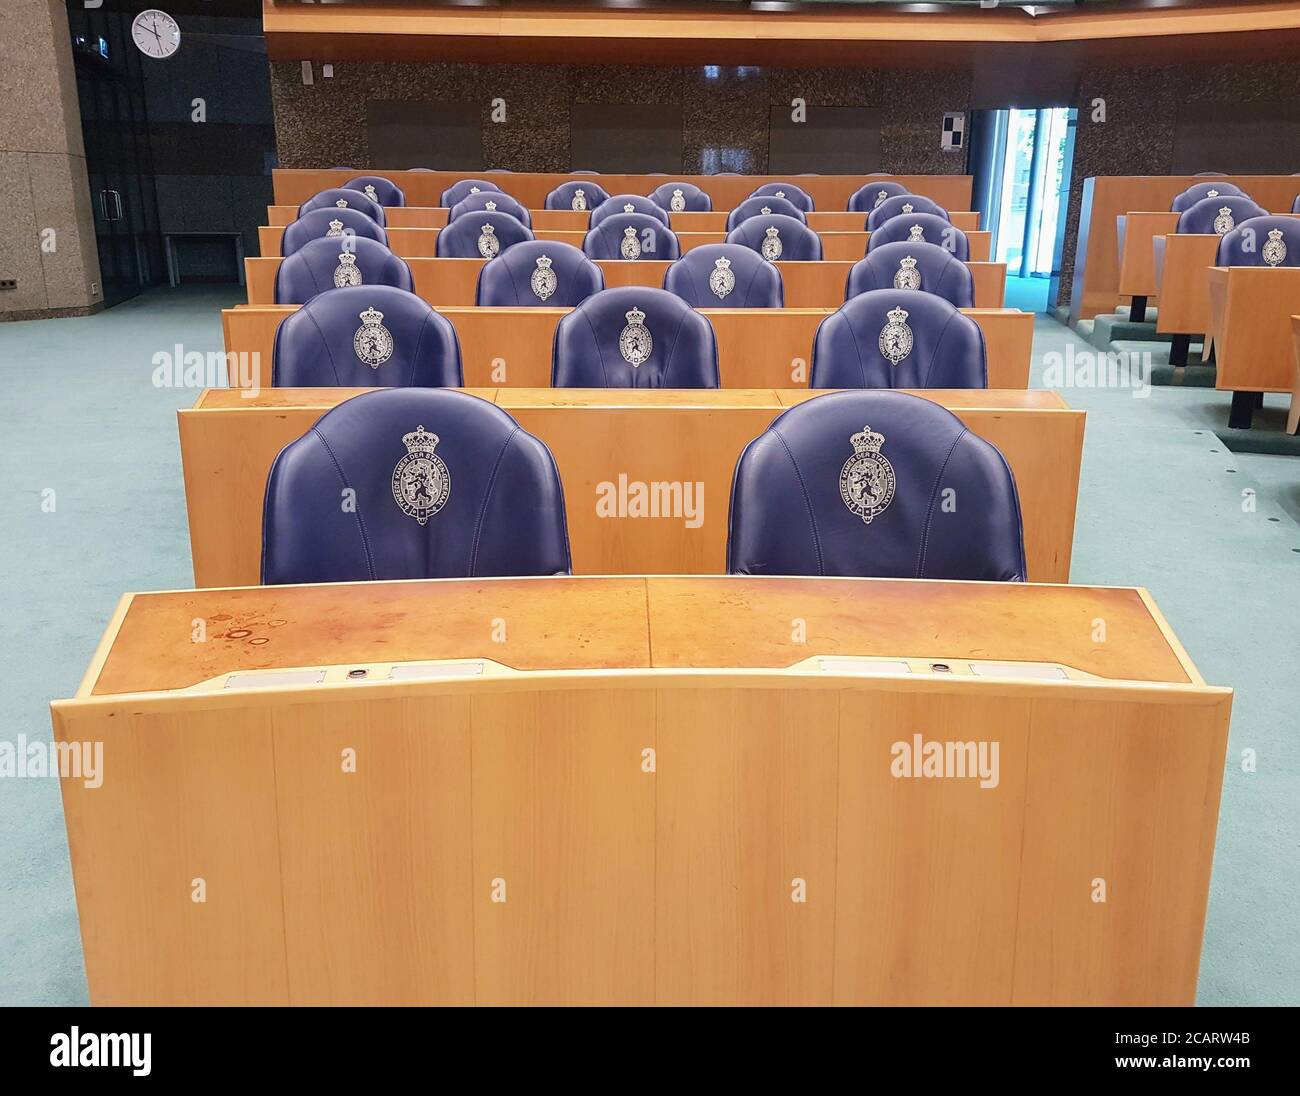 DEN HAAG, NIEDERLANDE - 20. Jul 2019: Repräsentantenhaus der Niederlande. Das niederländische Parlament heißt Generalstaaten. Stockfoto